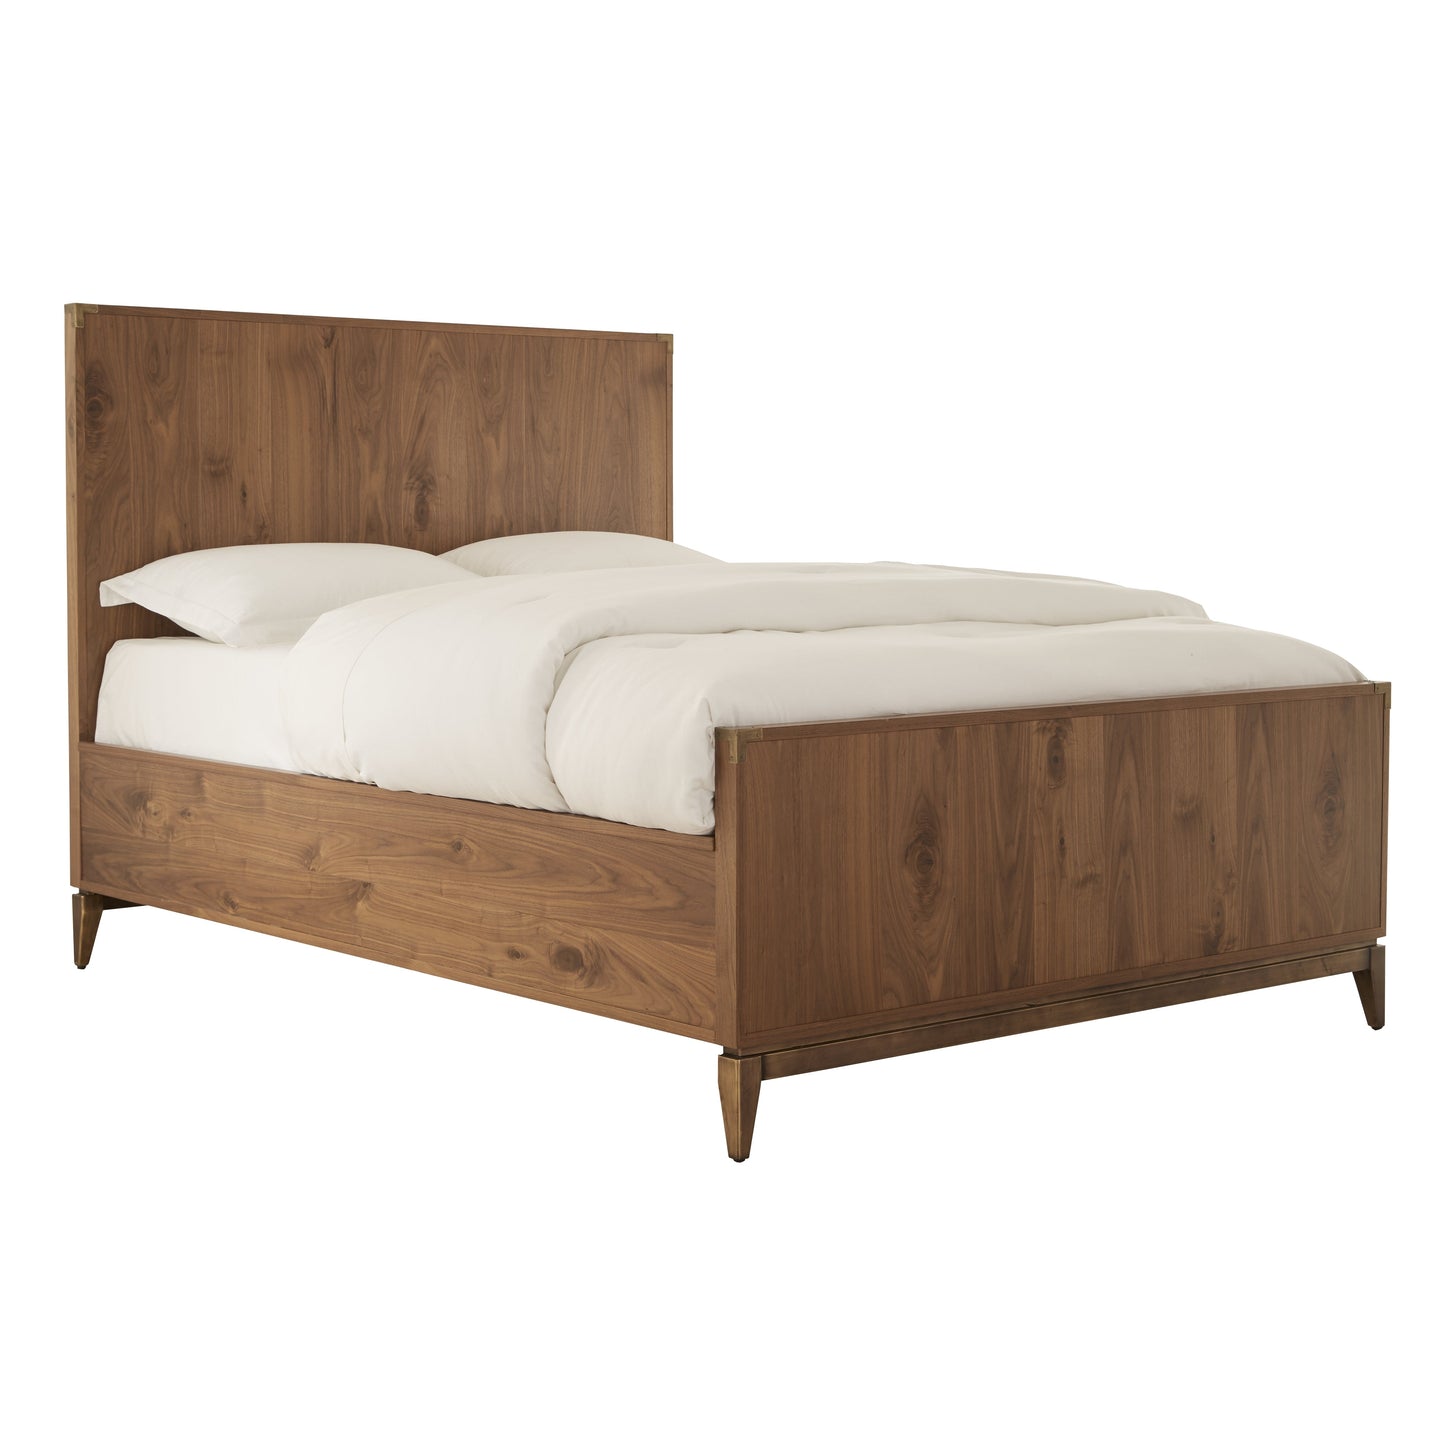 Modus Adler 5PC Queen Bedroom Set with 2 Nightstand in Natural Walnut